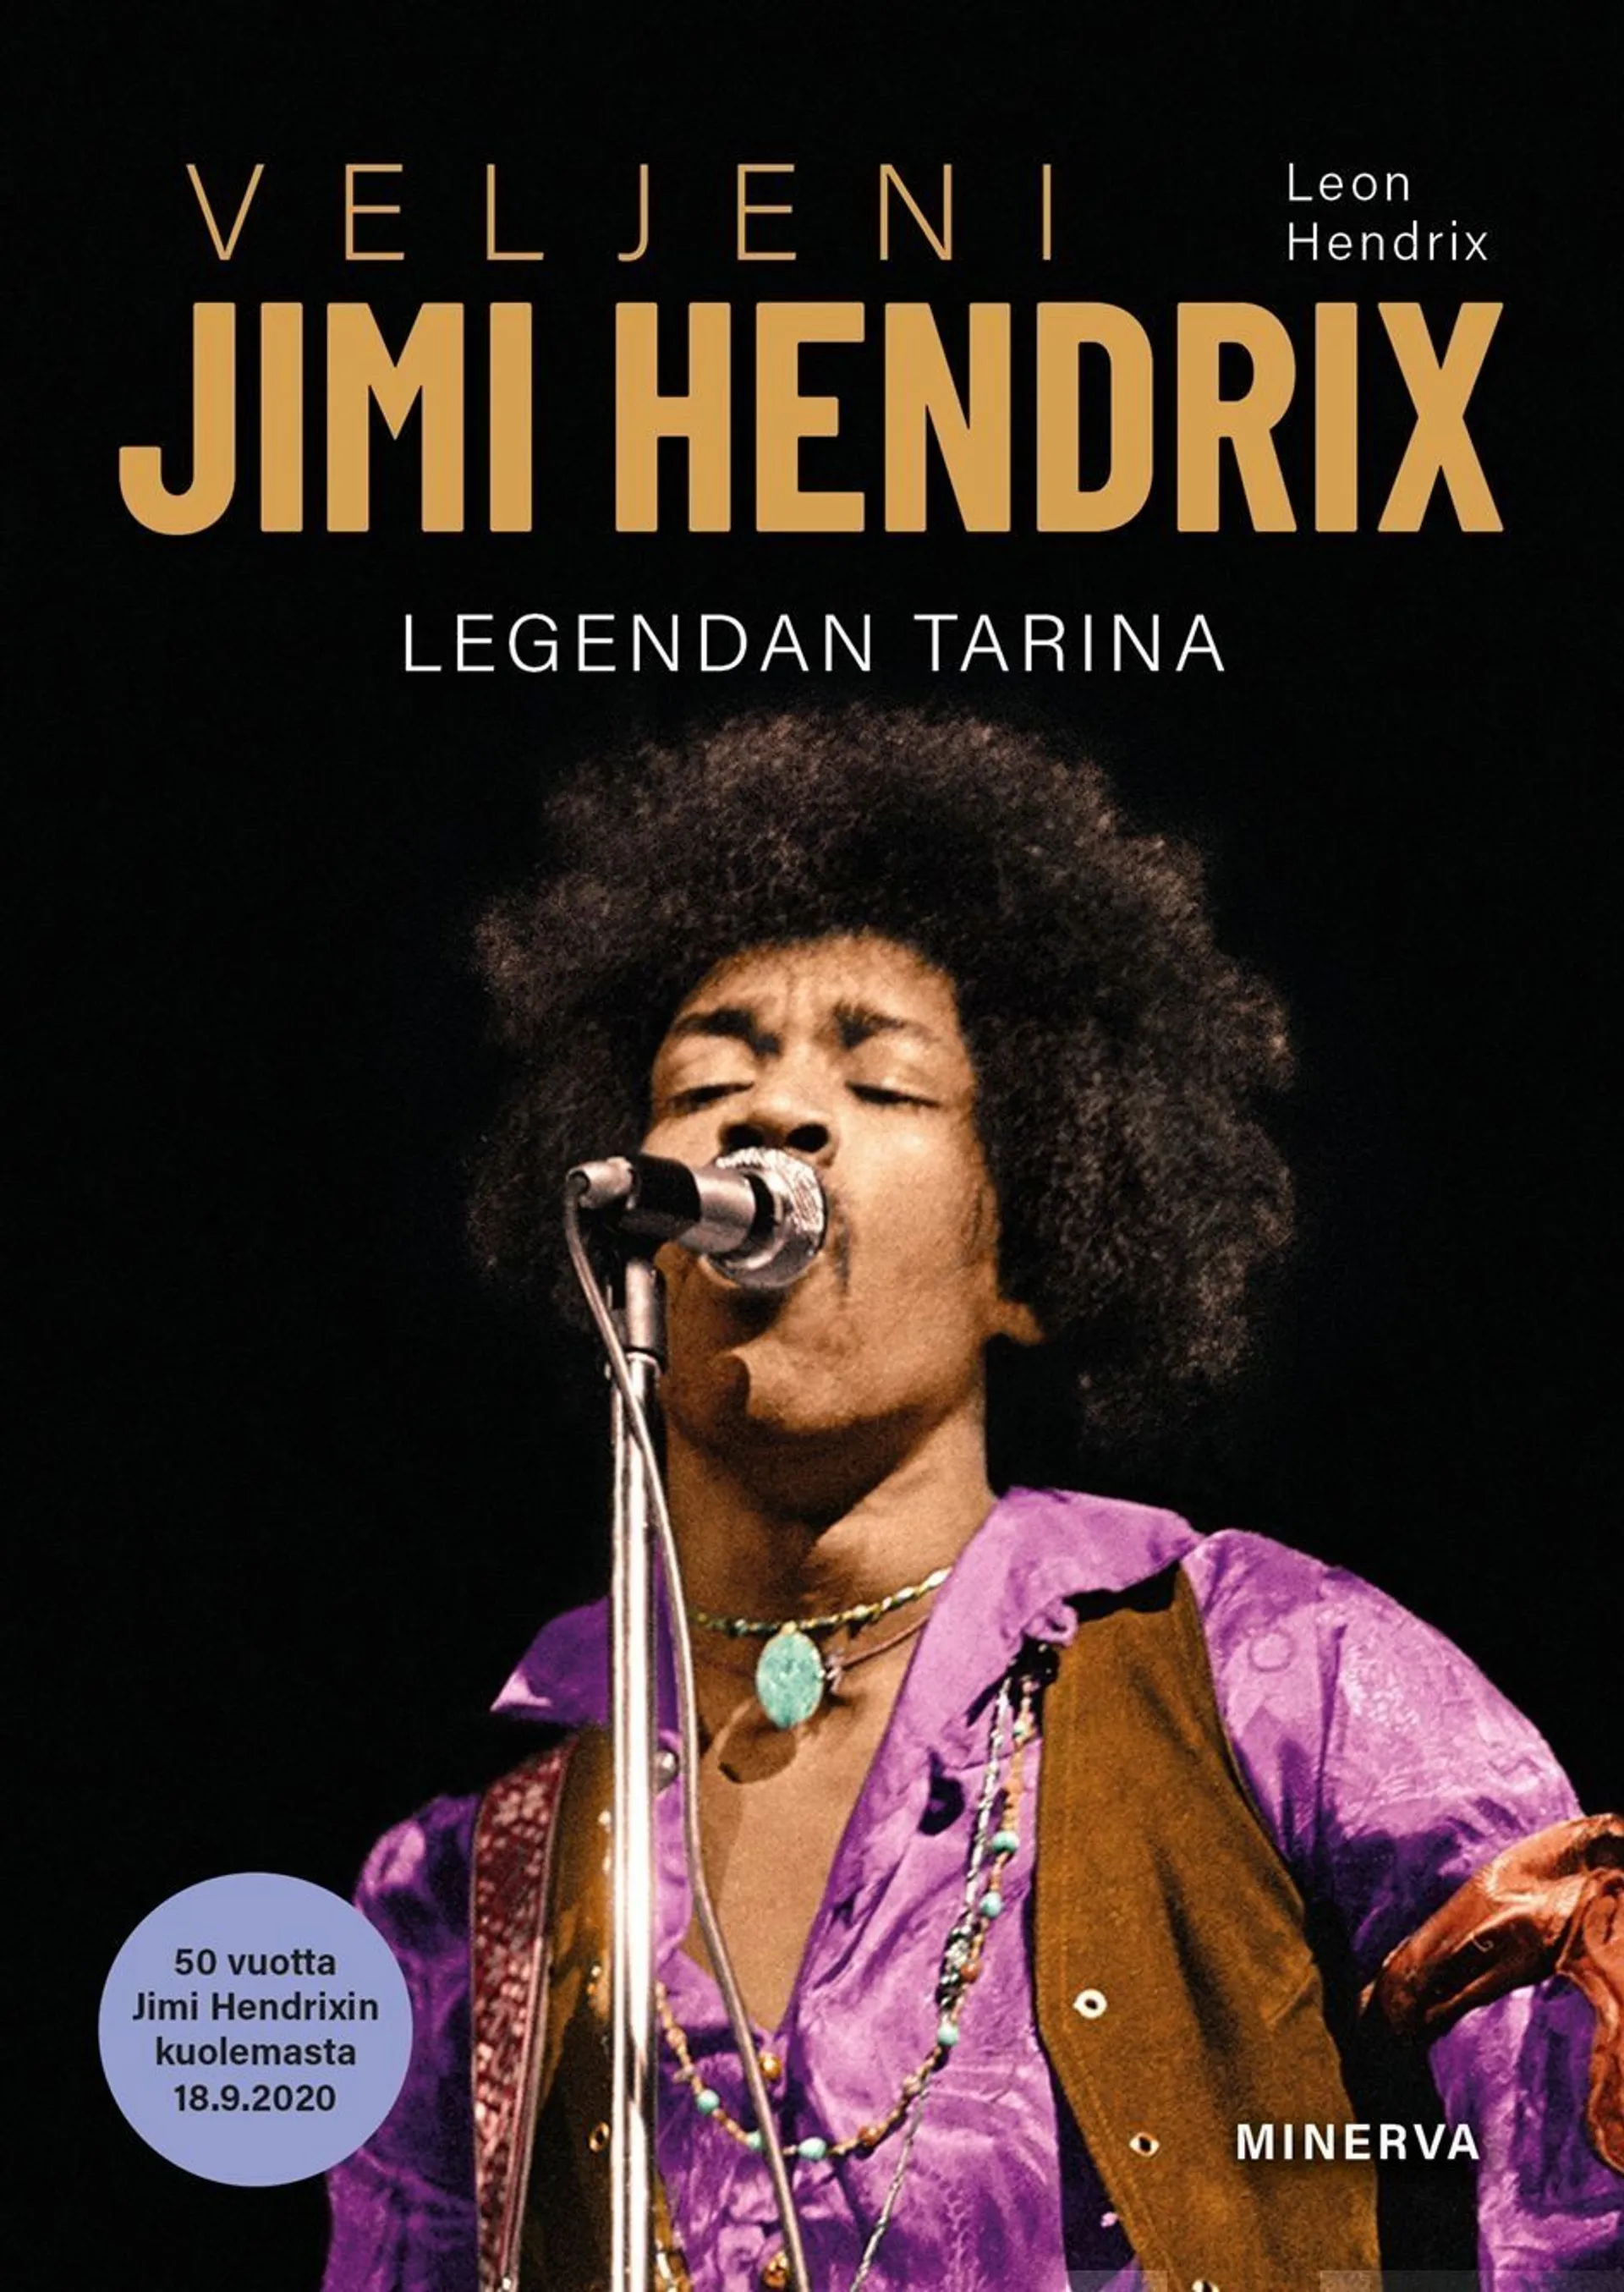 Hendrix, Veljeni Jimi Hendrix - Legendan tarina1942-1970